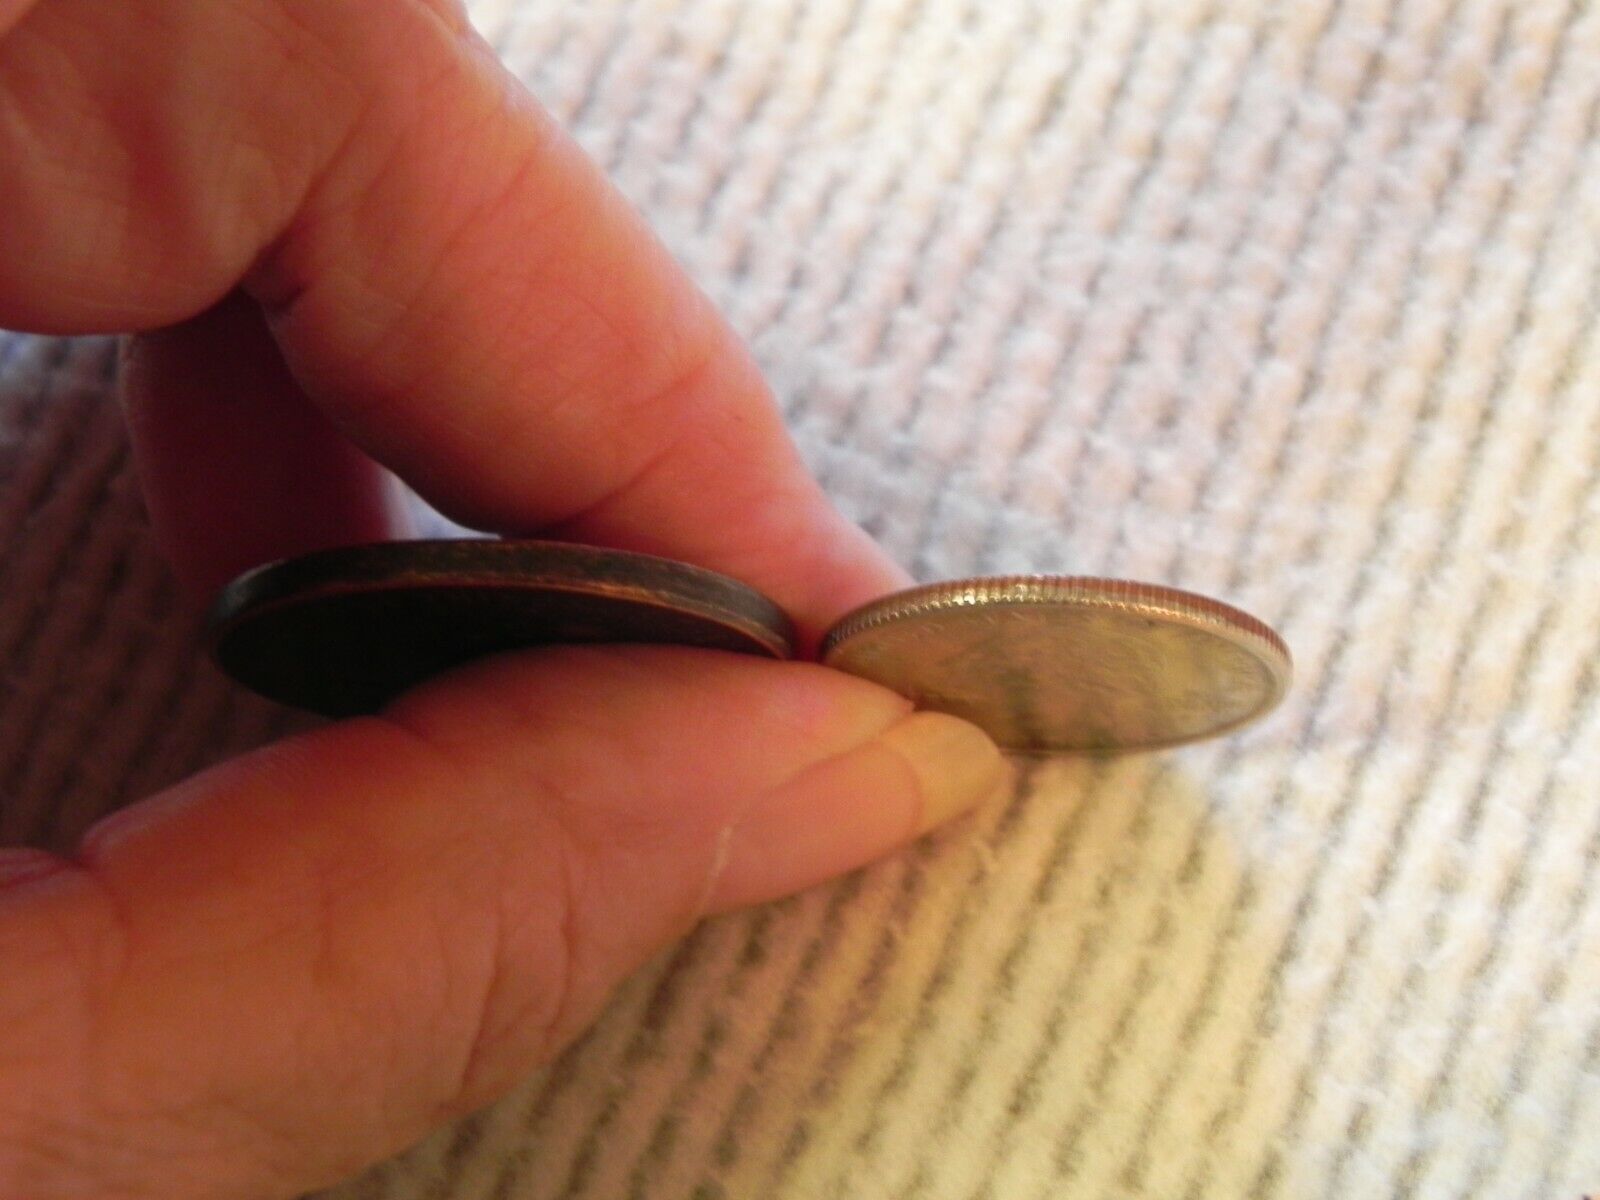 BILLIKEN Lucky Coin Token Pocket Piece Good Luck 1908 Chicago Unknown Vintage  Без бренда - фотография #6